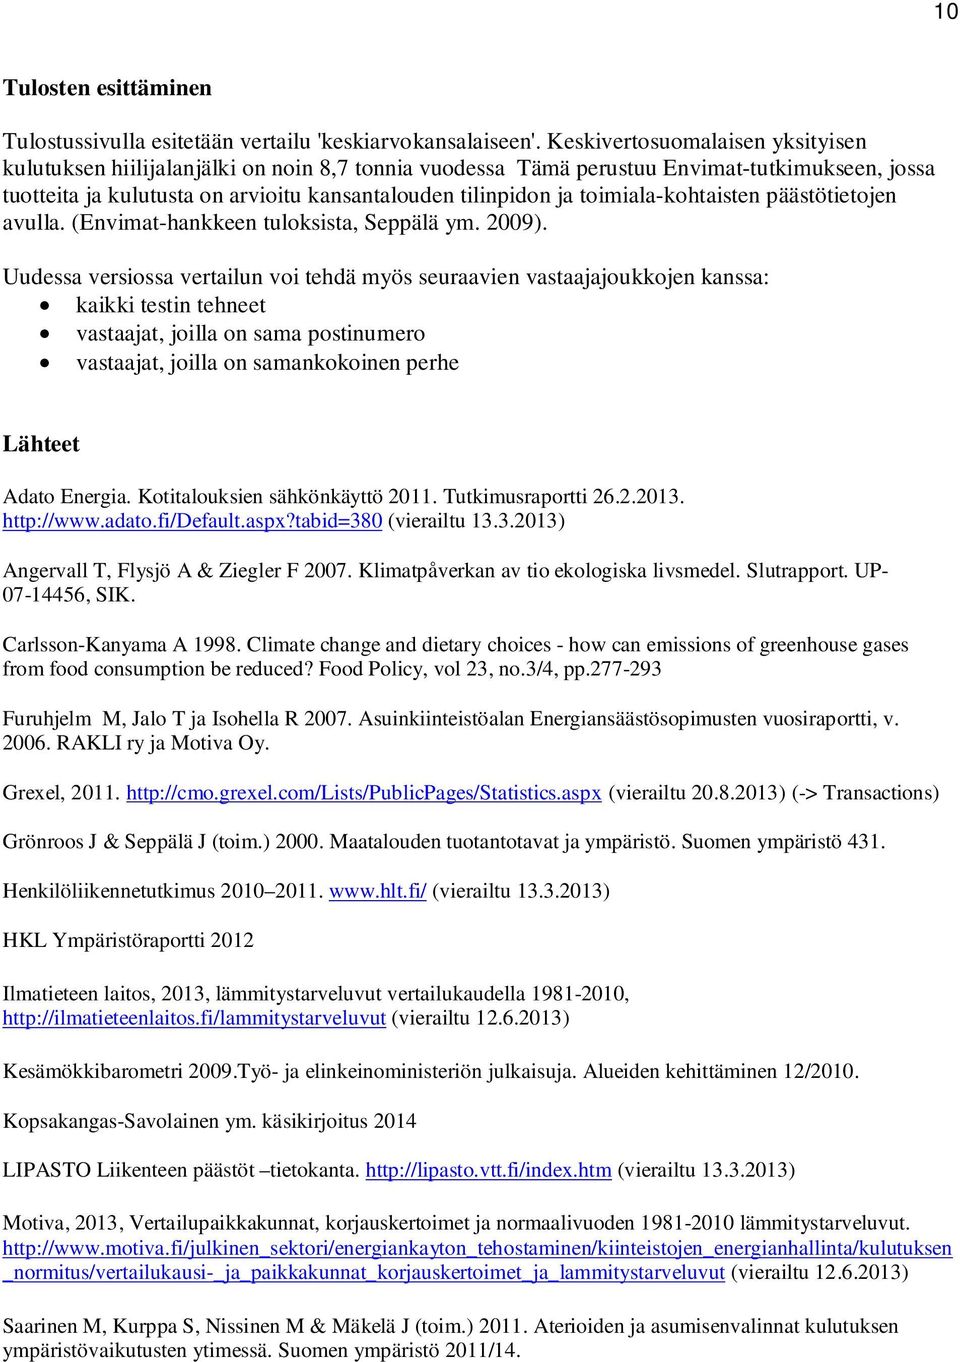 toimiala-kohtaisten päästötietojen avulla. (Envimat-hankkeen tuloksista, Seppälä ym. 2009).